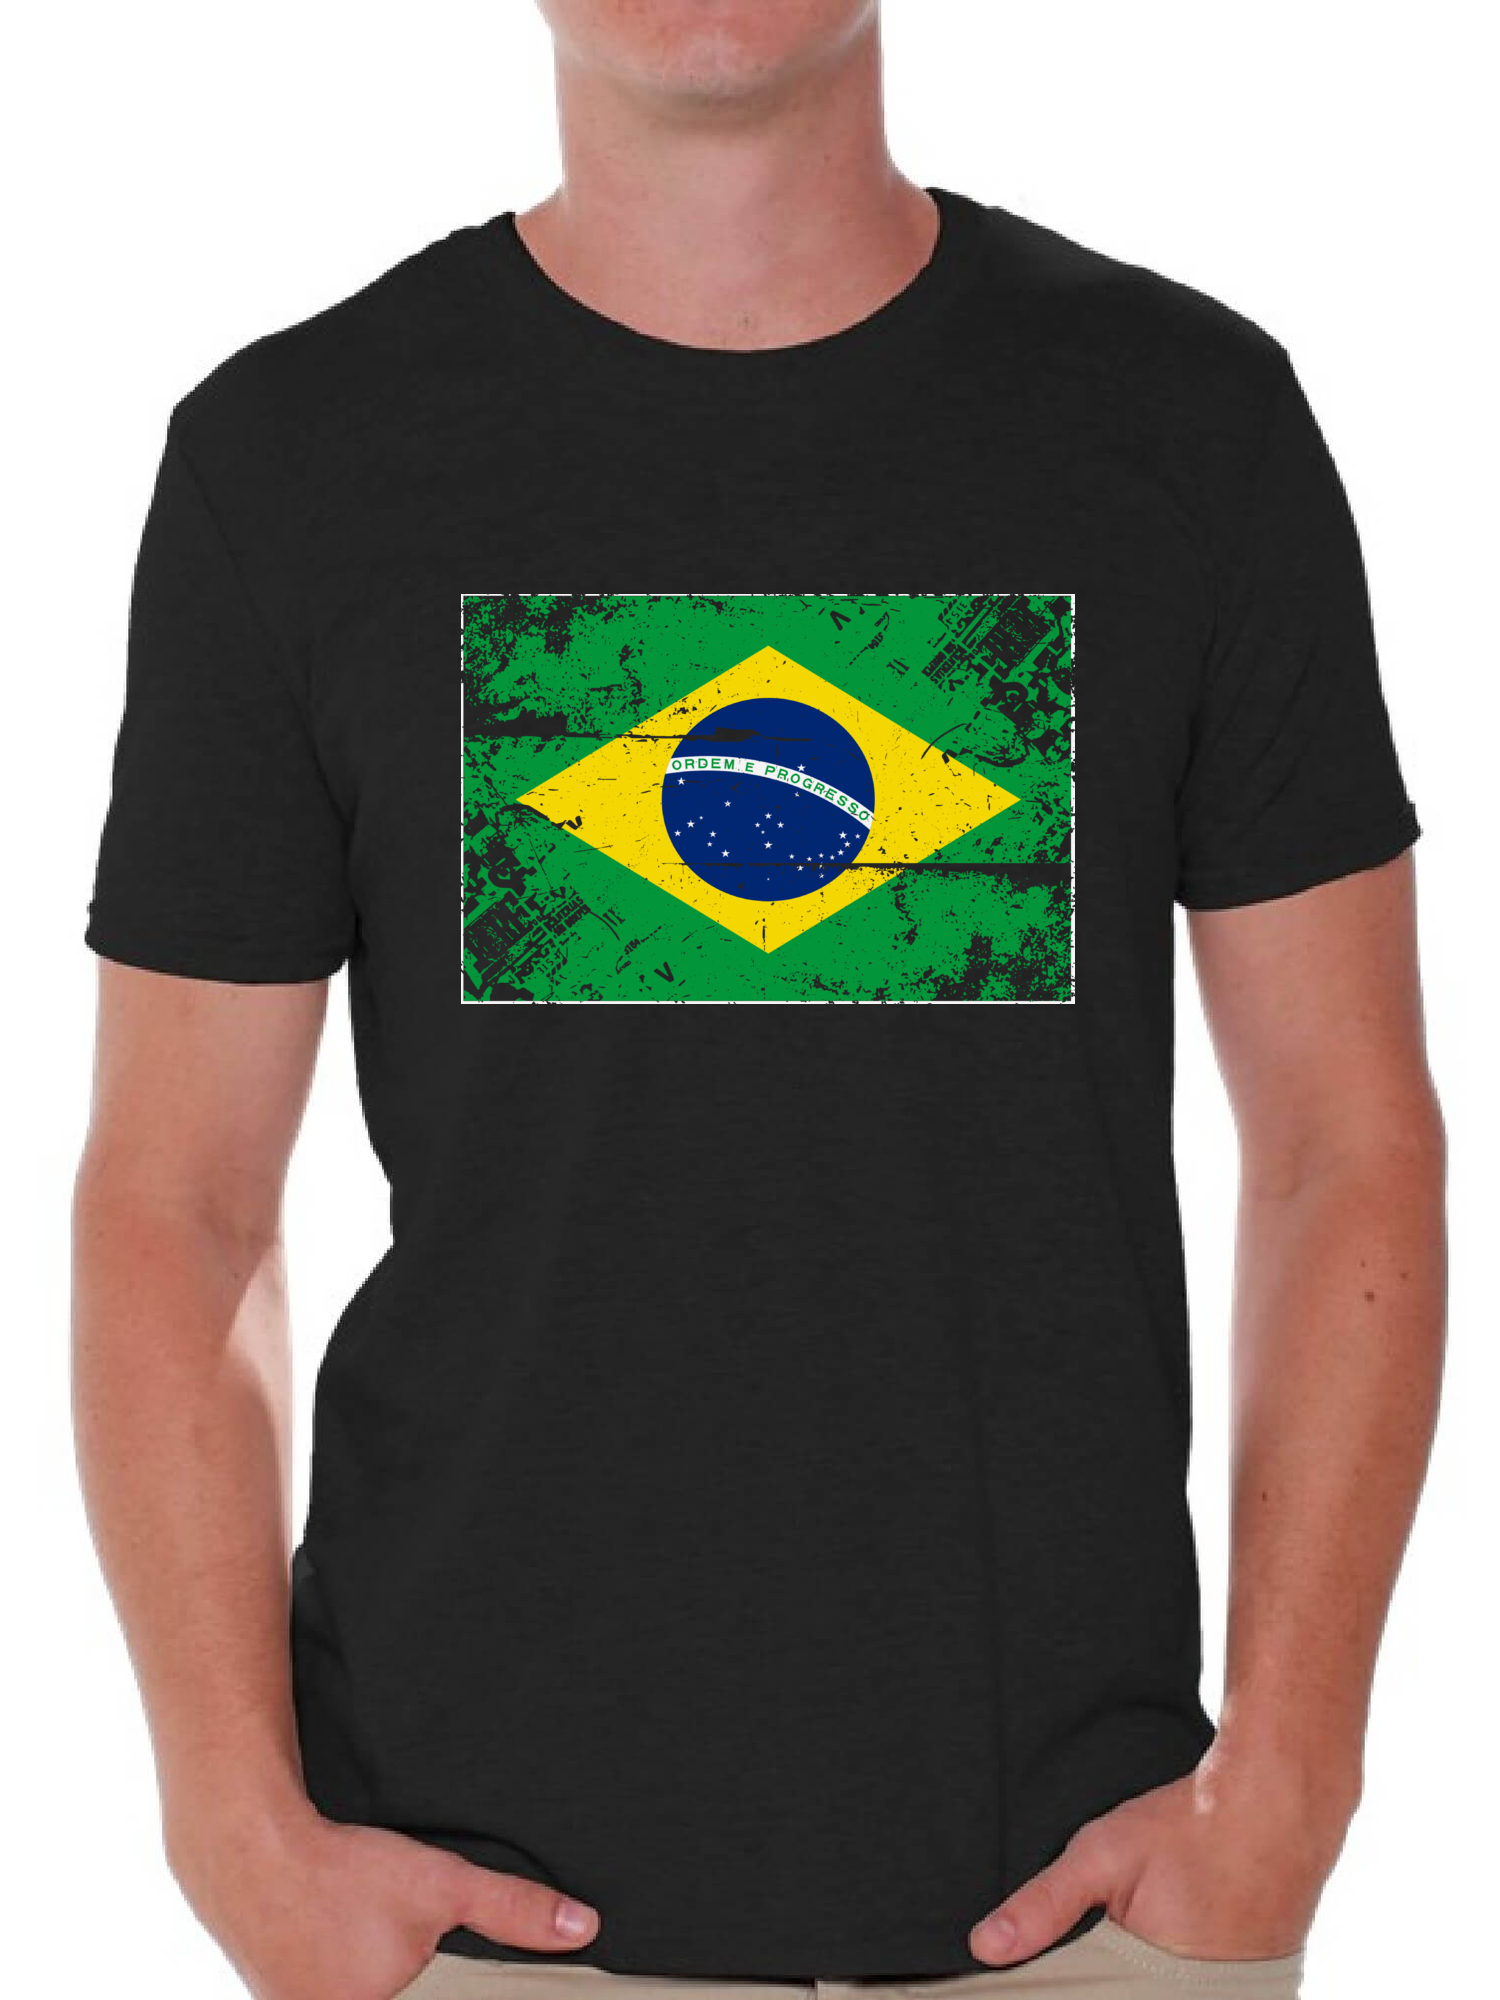 Awkward Styles Brazil Flag Shirt for Men Brazilian Soccer 2018 Tshirt Gifts from Brazil Flag of Brazil Brazilian Men Brazil Shirts for Men Brazil 2018 Tshirt Brazilian Gifts for Him Brazilian Flag - image 1 of 4